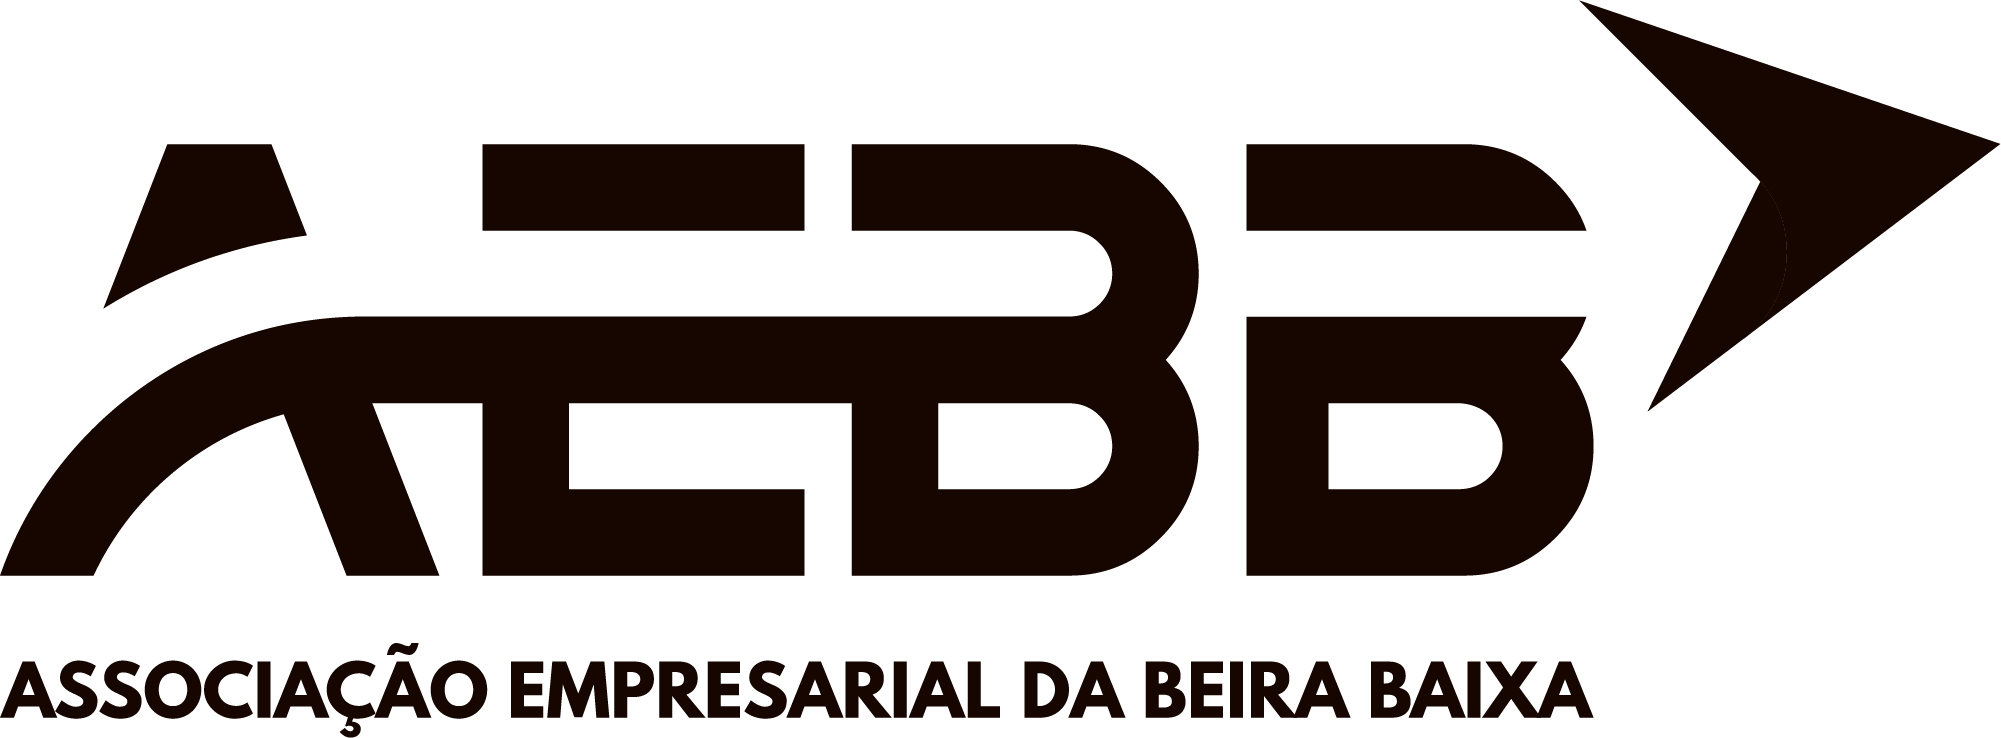 Logo AEBB Vp Mono JPG